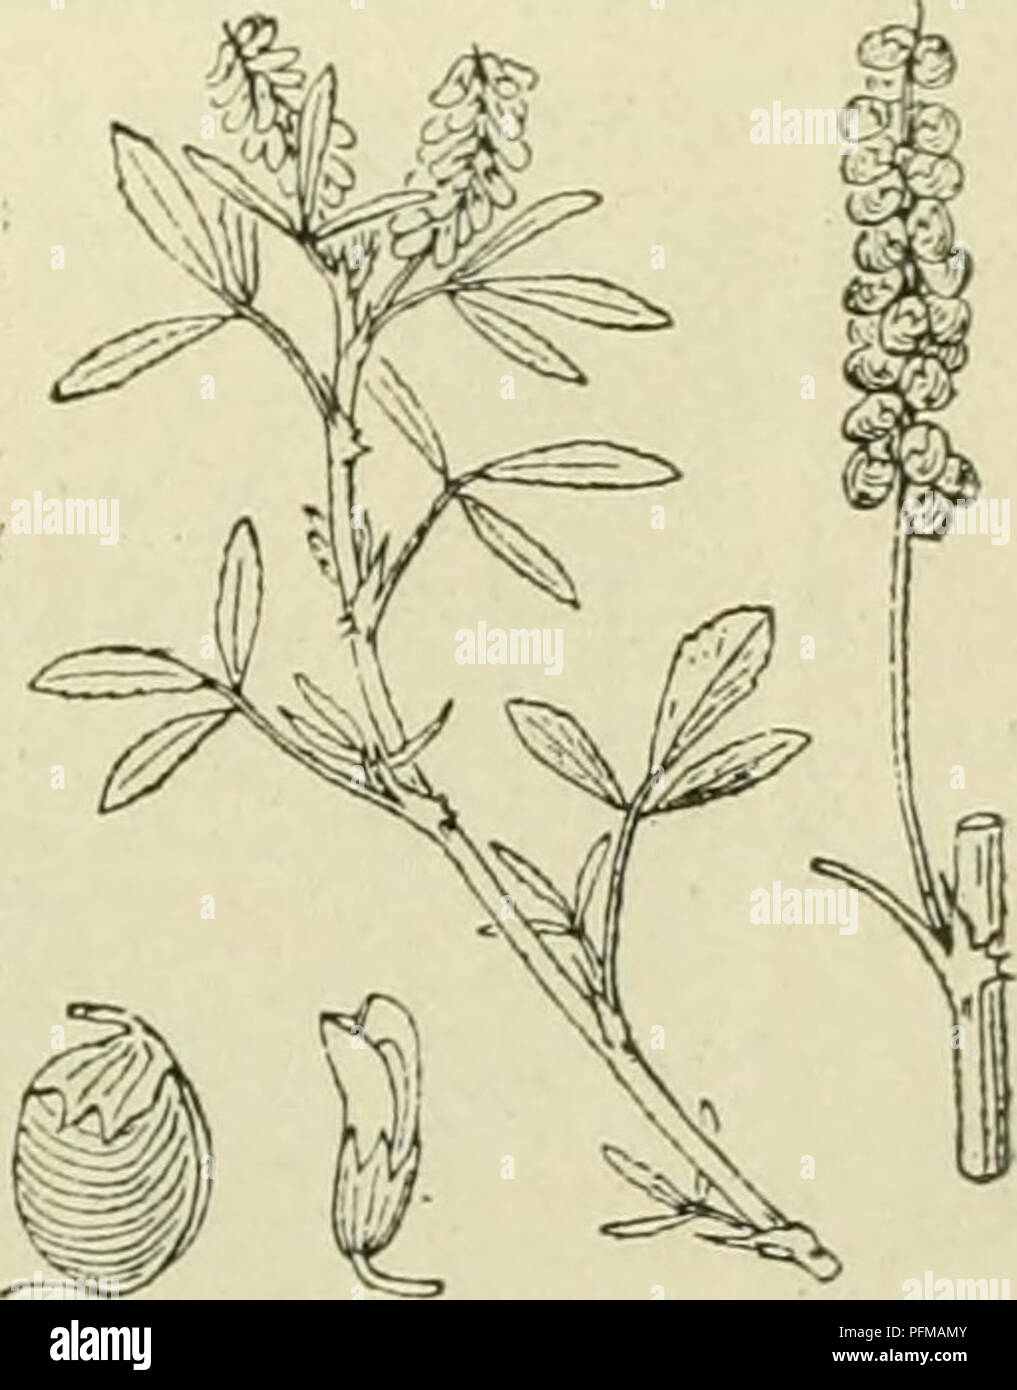 . De flora van Nederland. Plants. Melilotus sulcatus Fig. 754. M. indicus'') All. (M. parviflÃ³ra O Desf.). Kleinbloem- honig klaver (fig. 755). Deze plant heeft een rechtopstaanden of opstijgenden, weinig vertakten en weinig behaarden stengel. De bladen hebben bijna gaafrandige, korte, gekromd toege- spitste steunbladen en de blaadjes der onderste bladen zijn breed omgekeerd eirond, die der bovenste zijn langwerpig-wigvormig, getand, iets afgeknot. Melilotus indicuQ Fig. 755. ') dentatus = getand. -) sulcatus = gegroefd. â¢) parviflÃ³ra = kleinbloemig. â¢â ) indicus = Indisch.. Please note th Stock Photo